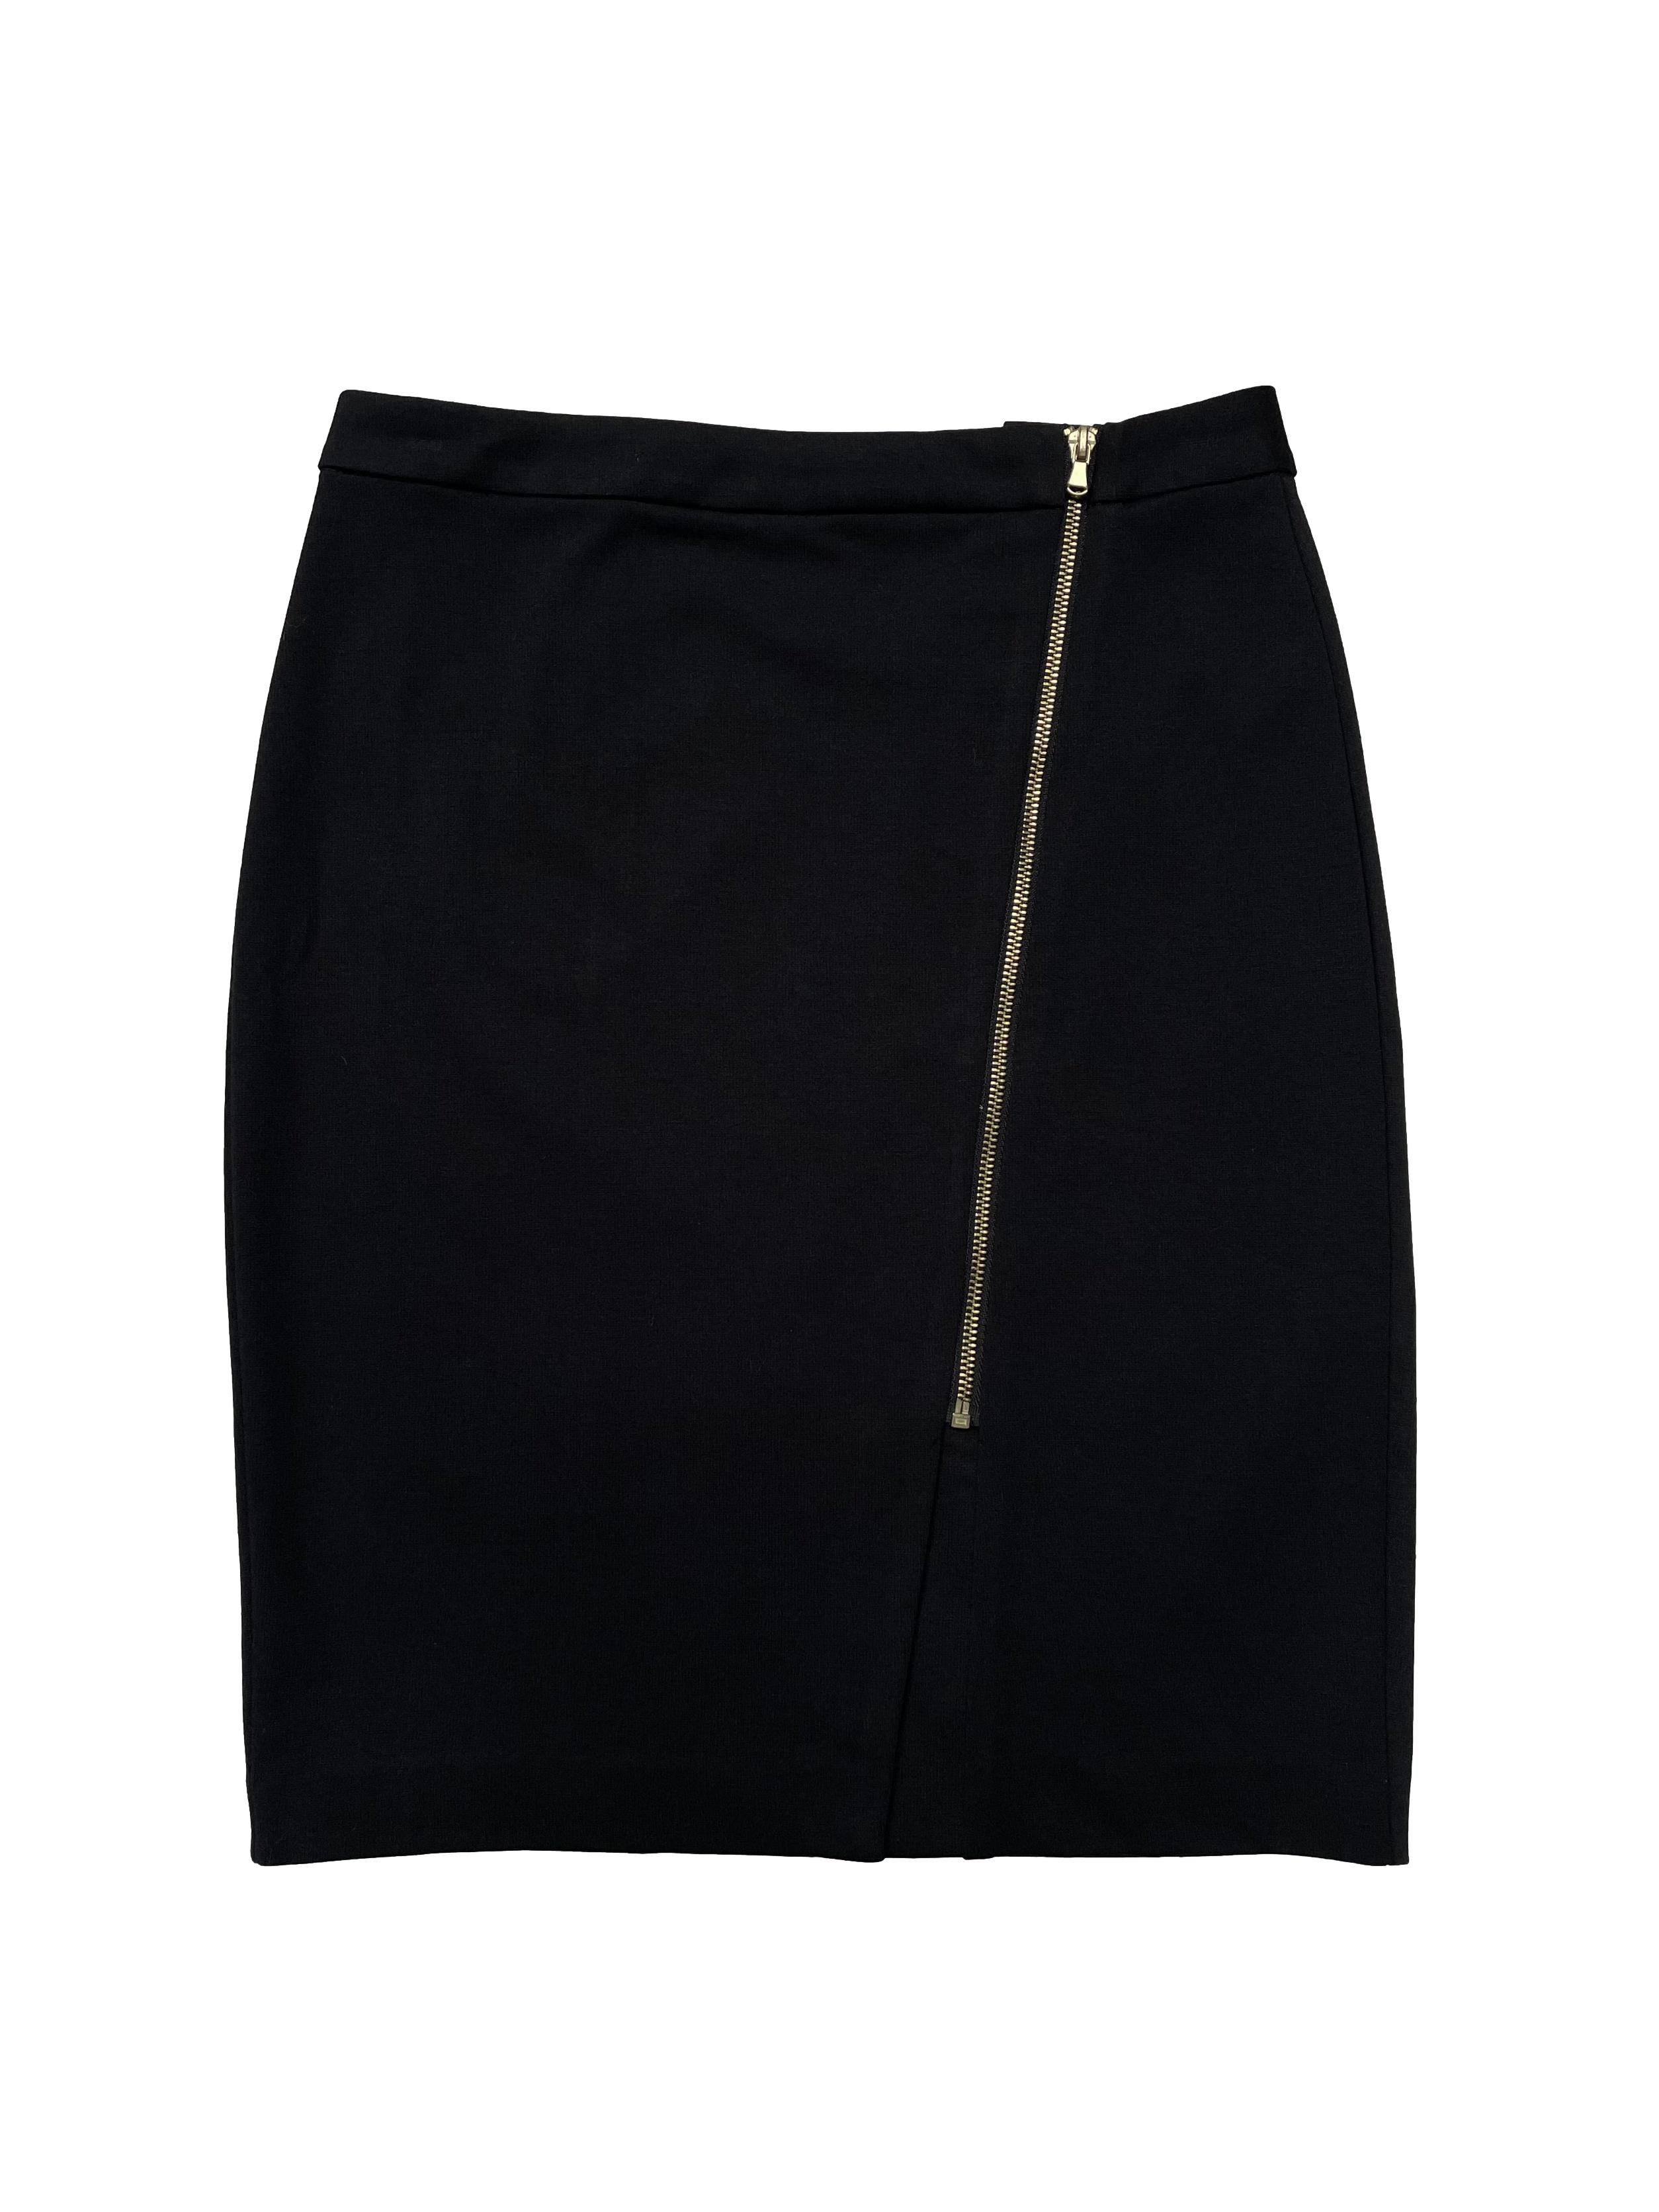 Falda negra tela tipo sastre stretch, modelo cruzado con cierre delantero, corte recto. Cintura 74cm Largo 53cm | Las Traperas